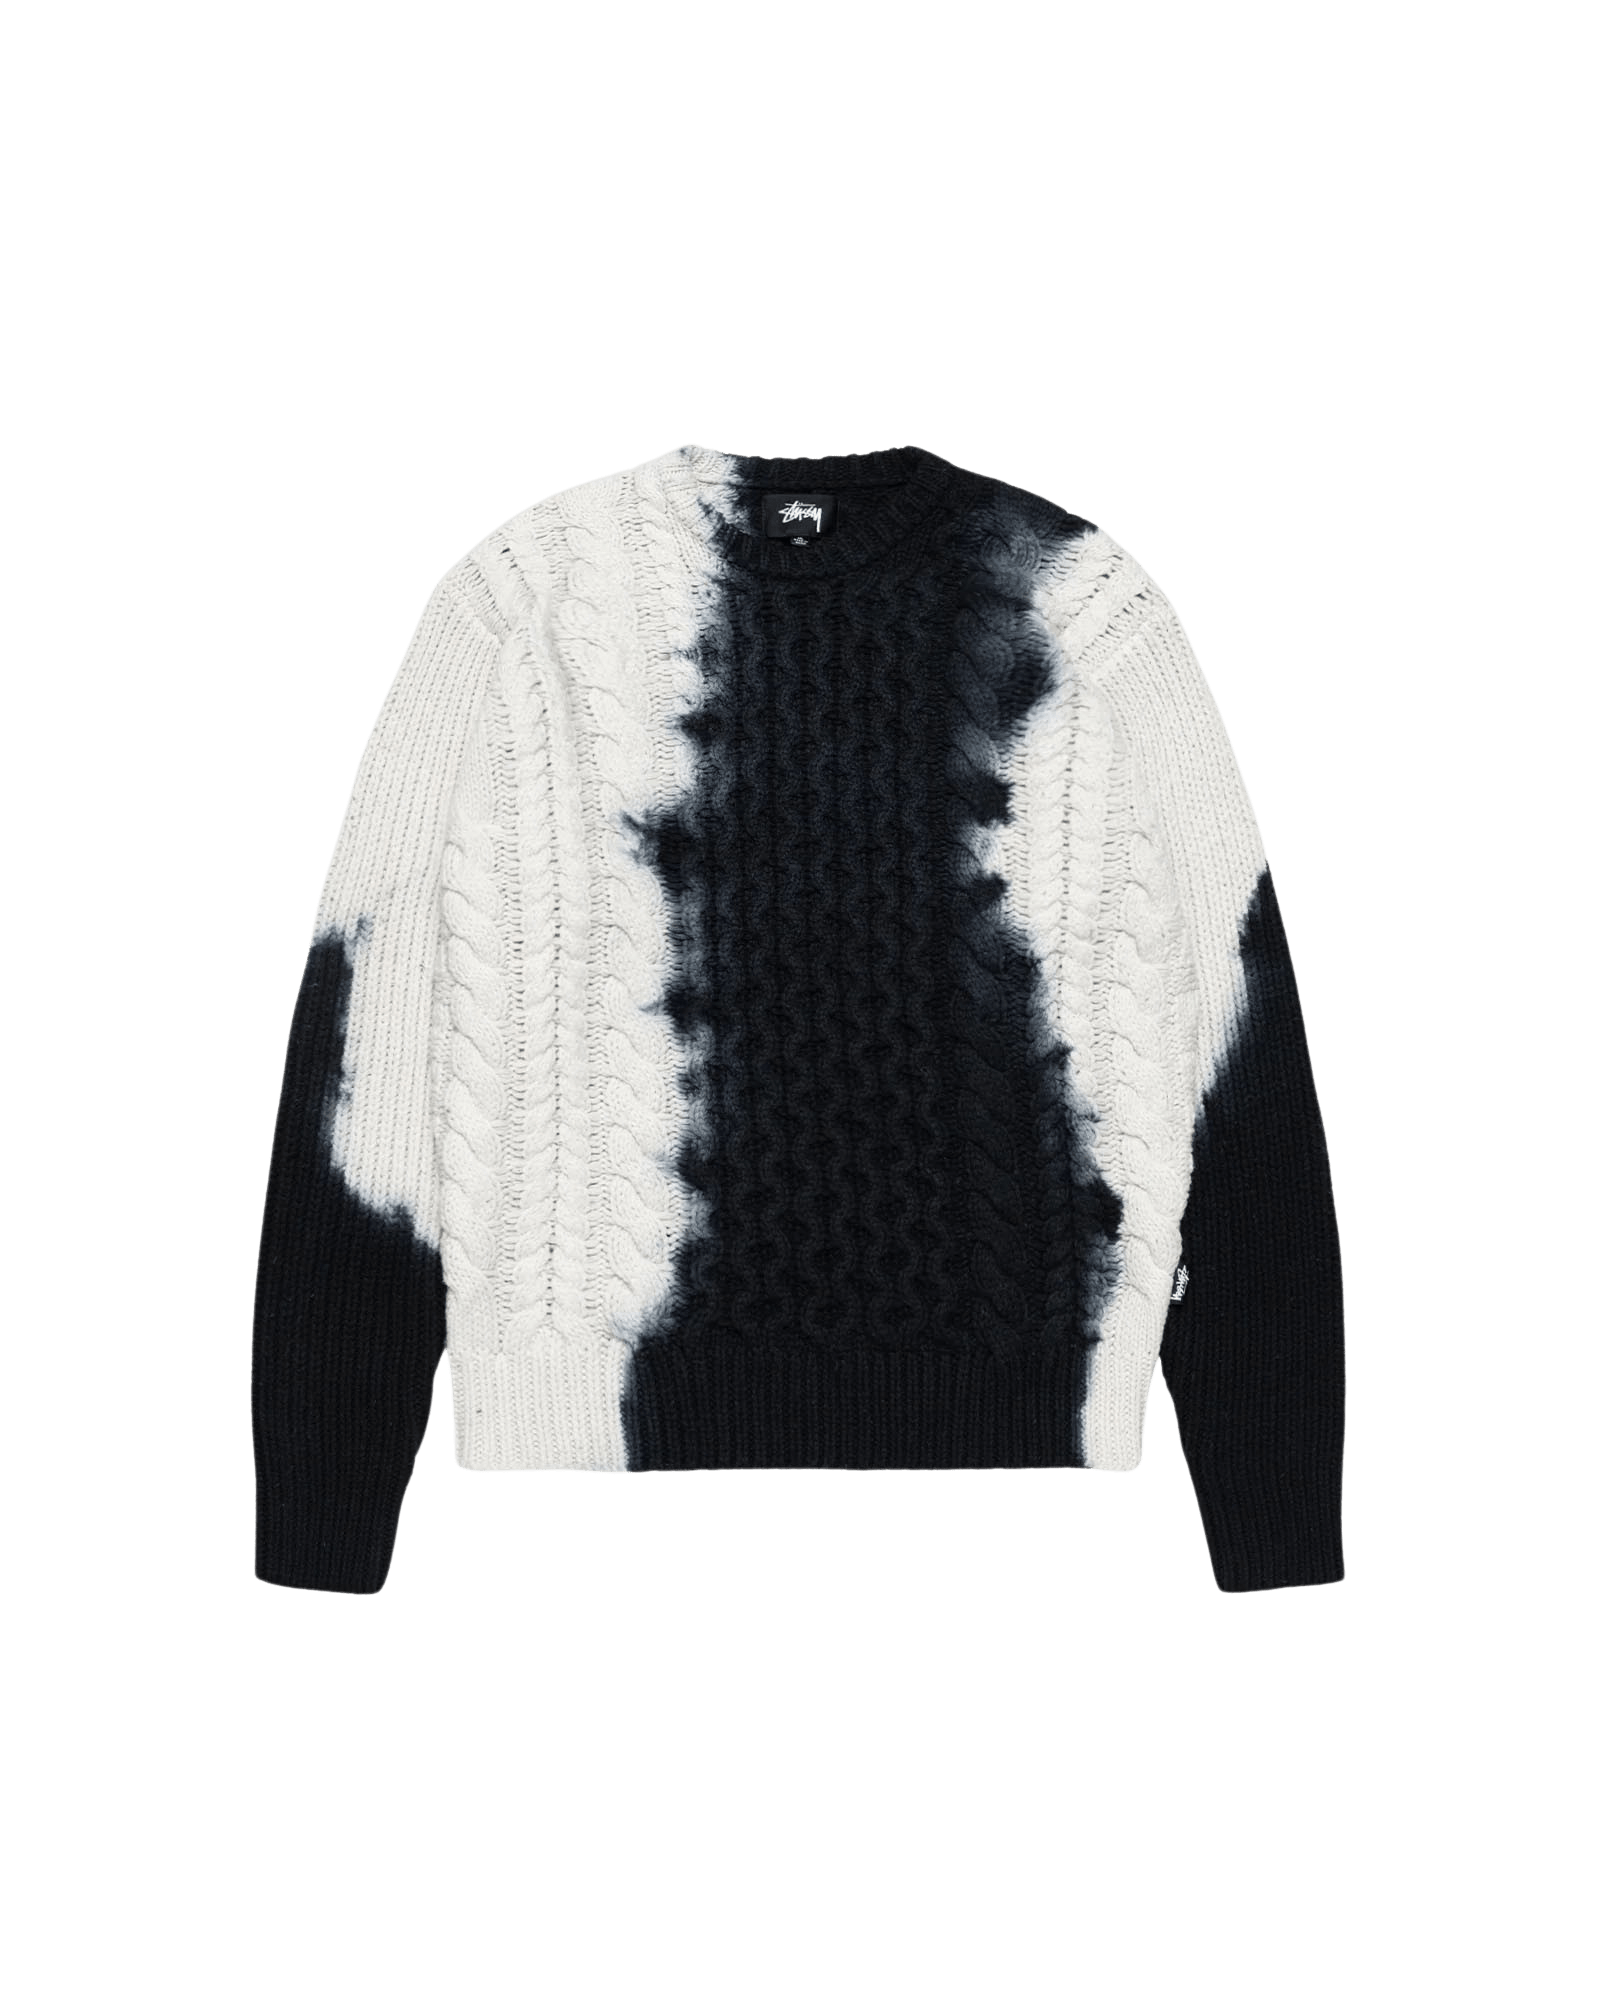 Tie Dye Fisherman Sweater Stüssy Tops Knitwear Black